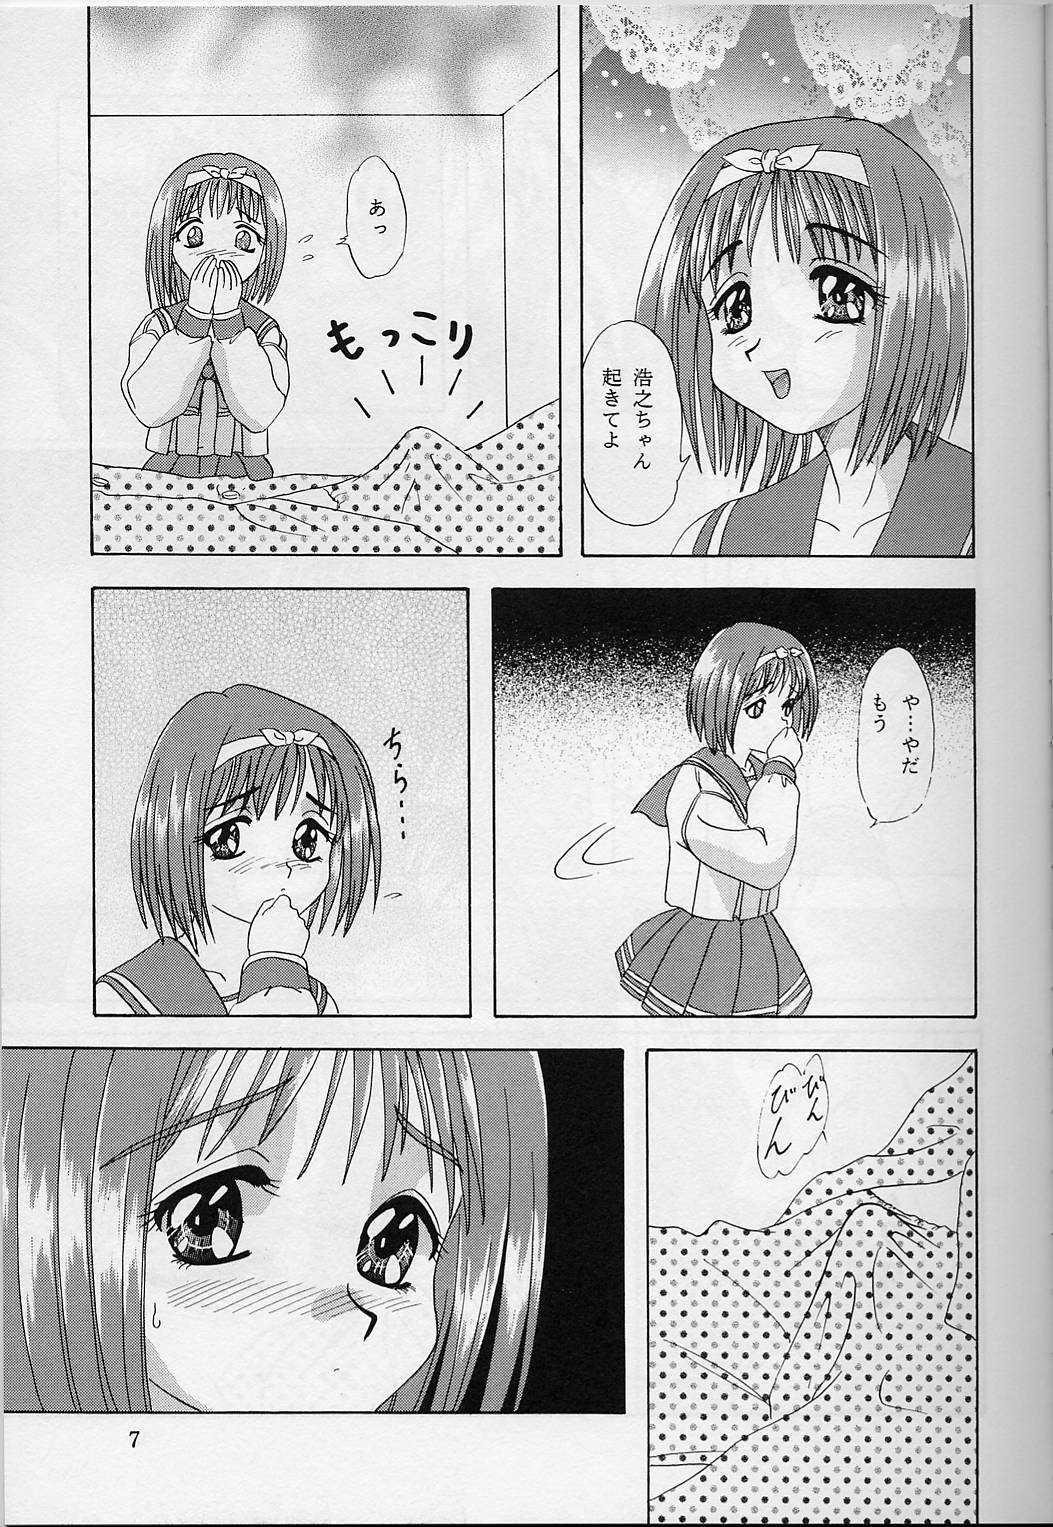 Nerd Lunch Box 33 - Happa no Shizuku - To heart Amateur Porno - Page 6